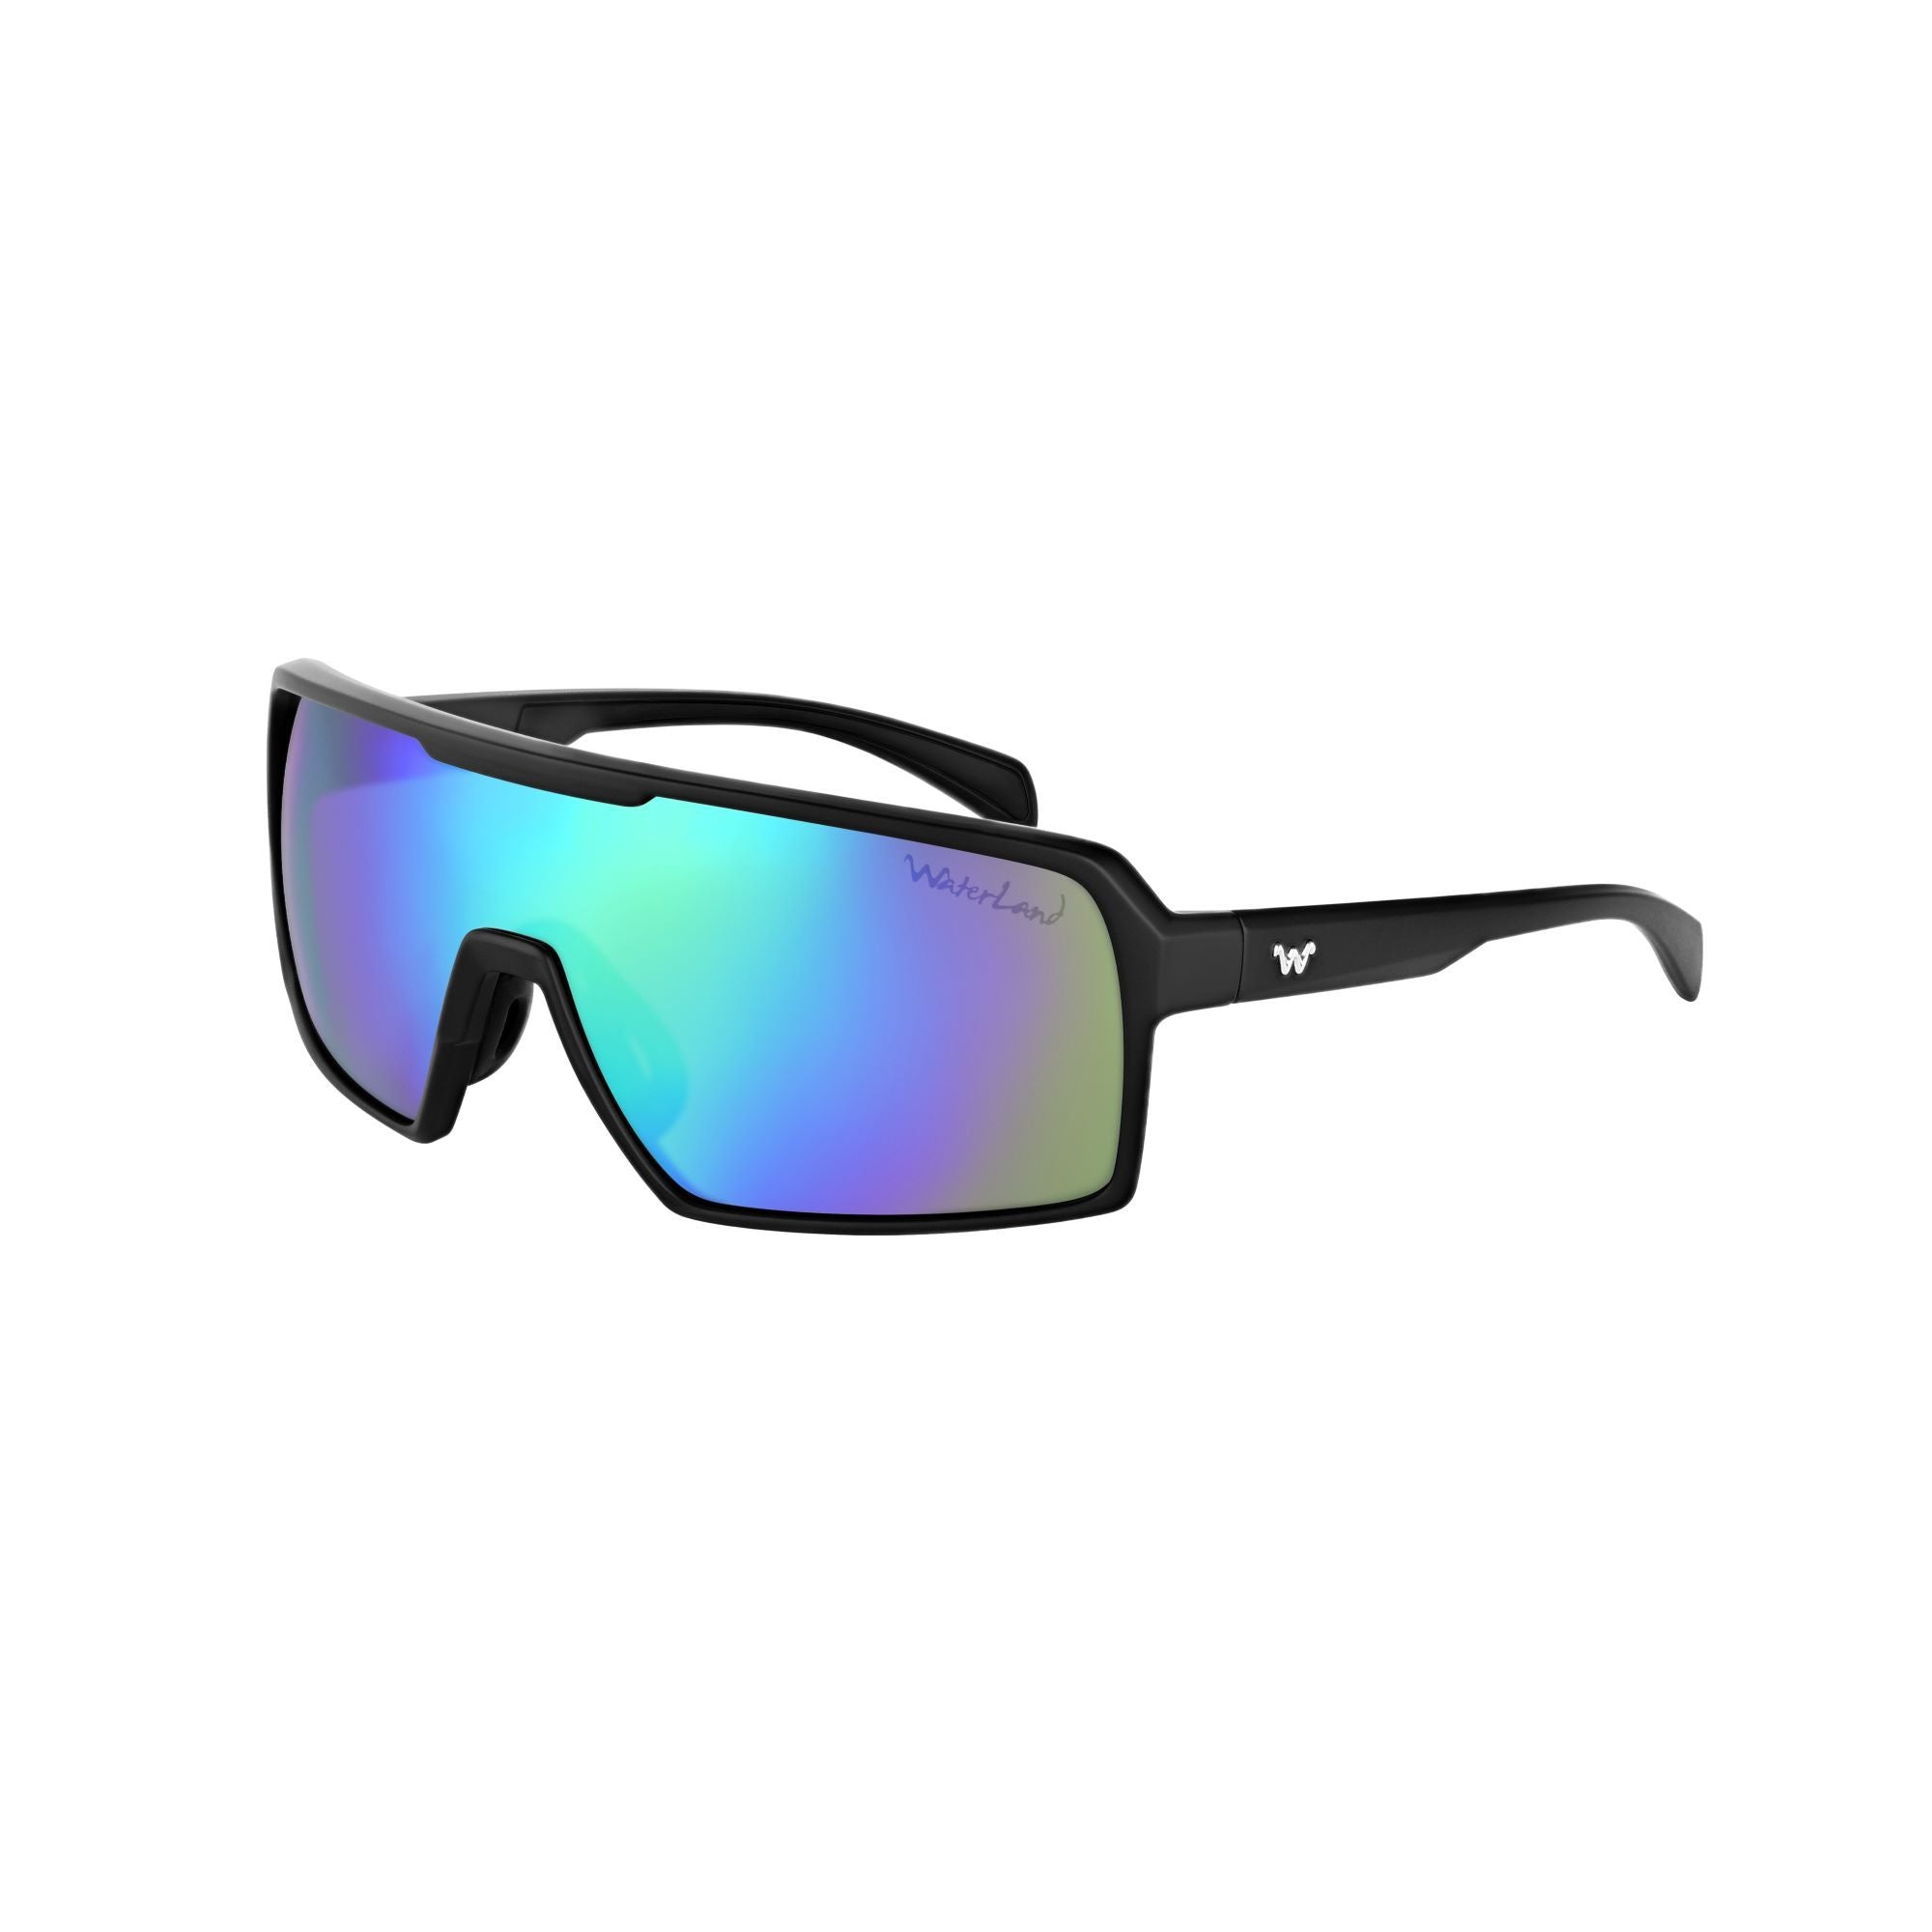 Waterland Fishing Sunglasses